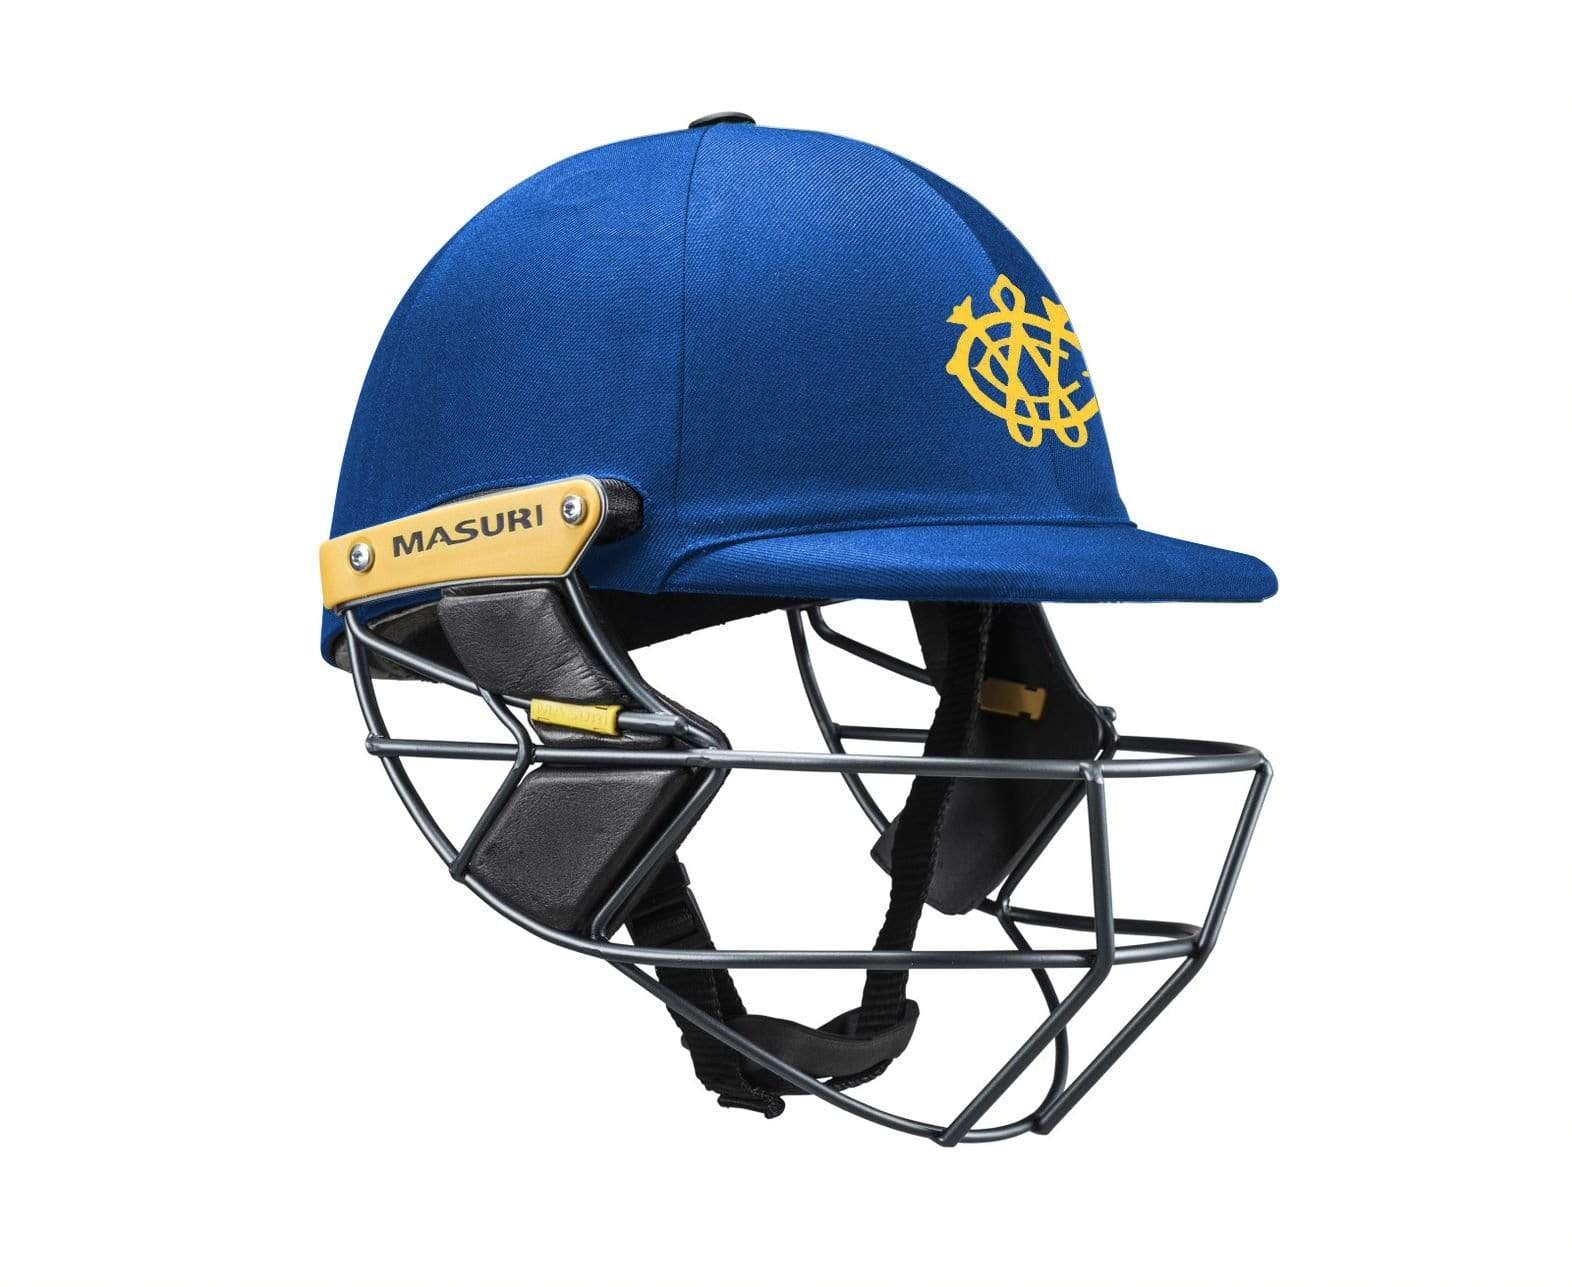 Masuri Club Helmet Williamstown Cricket Club Helmet